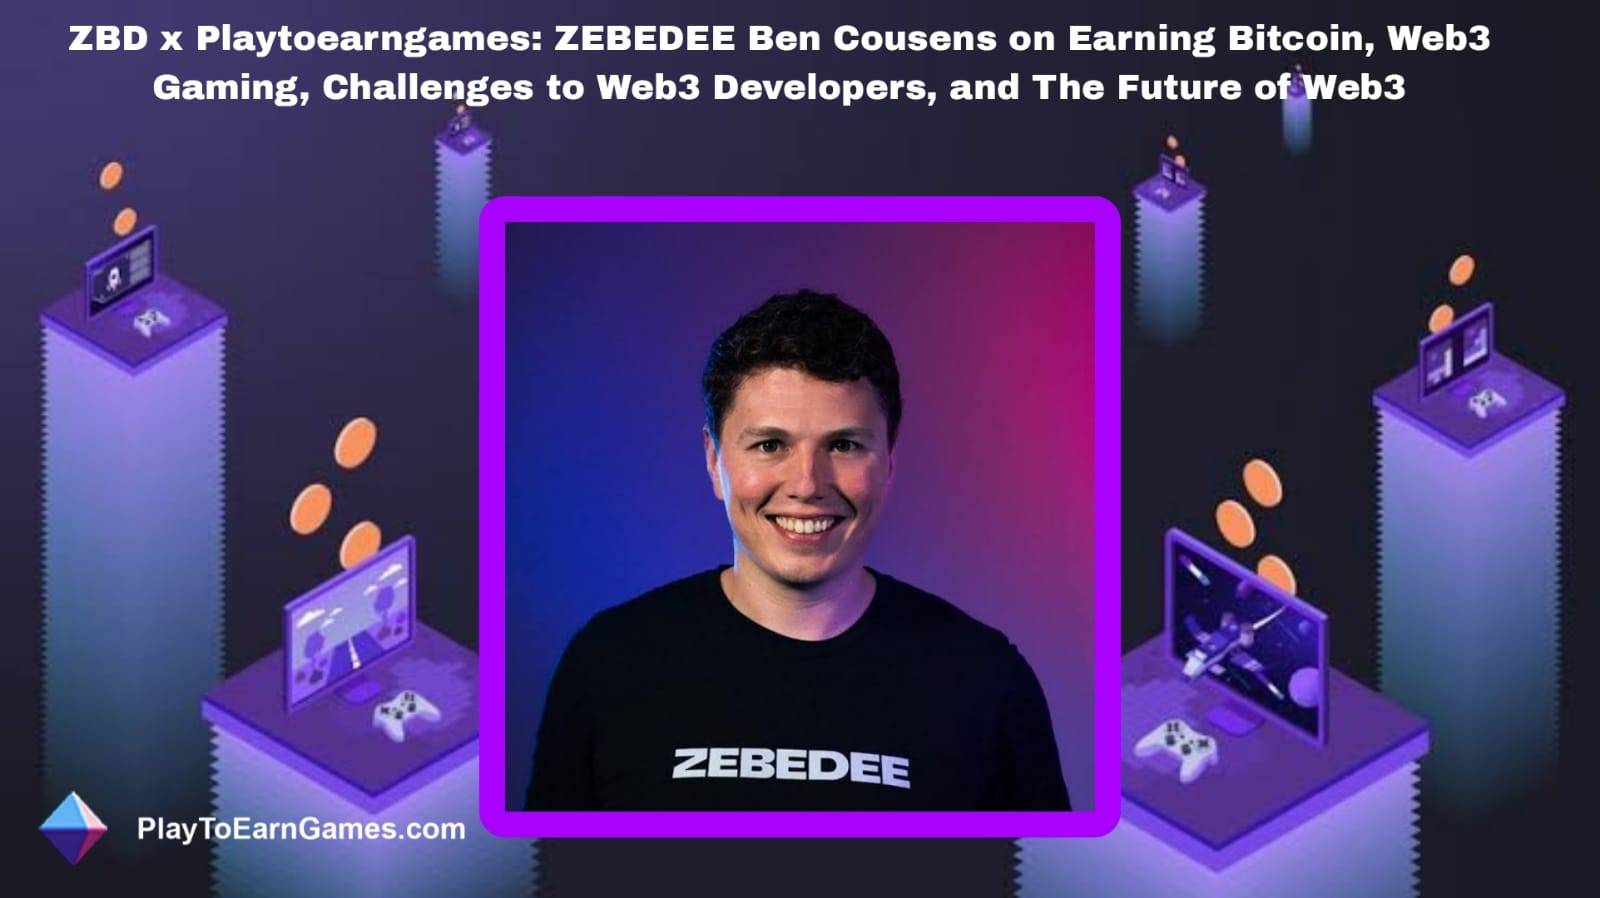 Recompensas, tendências e entrevista de Bitcoin da ZBD com Ben Cousens